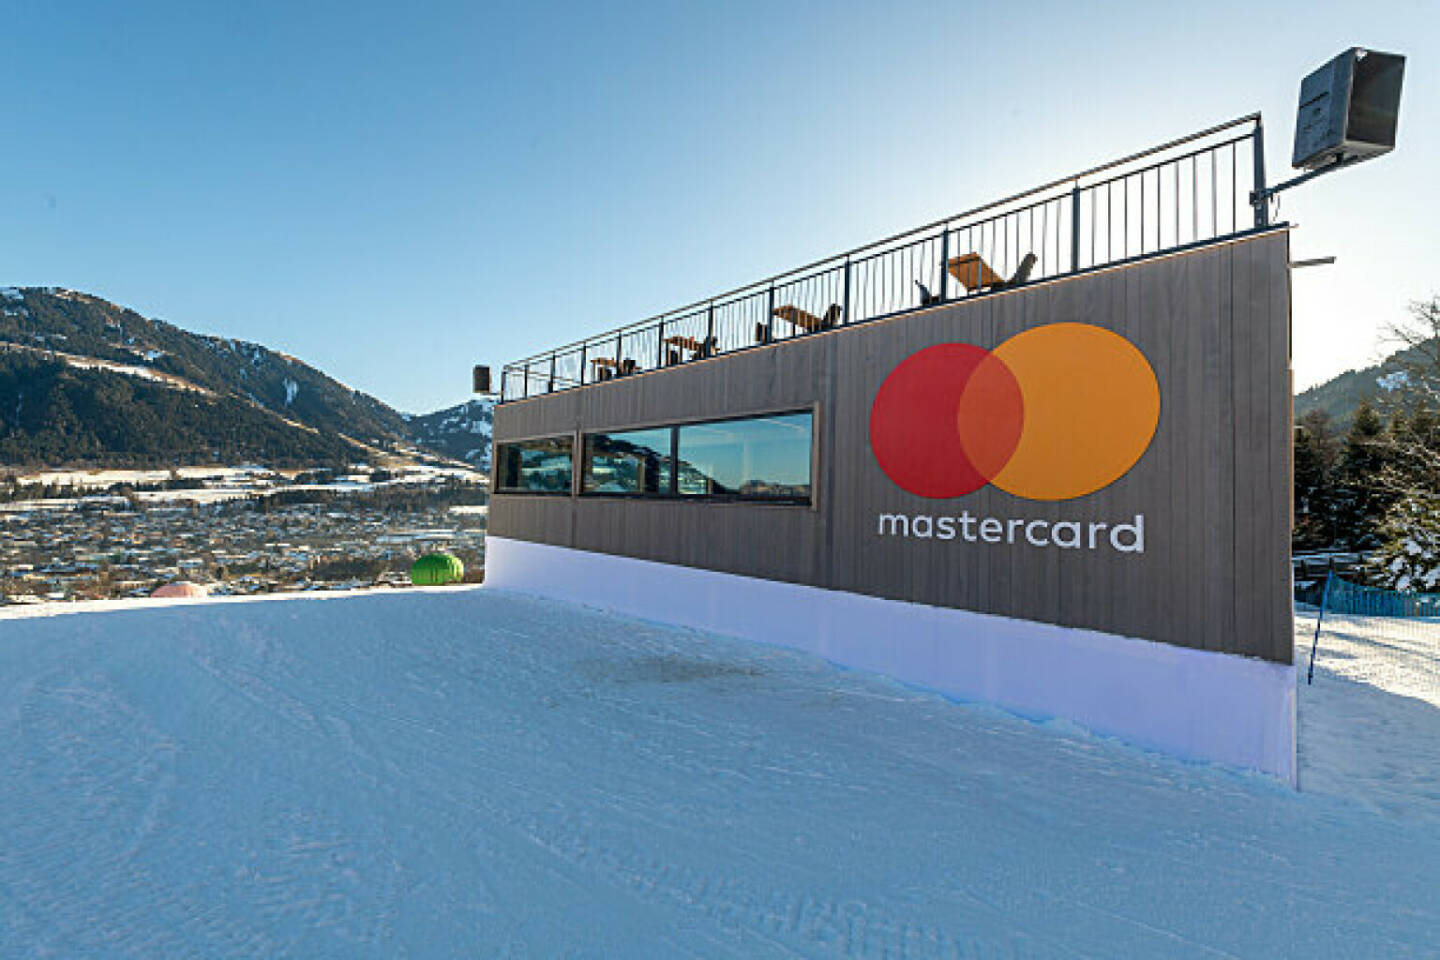 Mastercard sponsert zum achten Mal die Hahnenkamm-Rennen in Kitzbühel, Hahnenkamm Rennen in Kitzbühel. Mastercard Lounge.  Credit: Mastercard